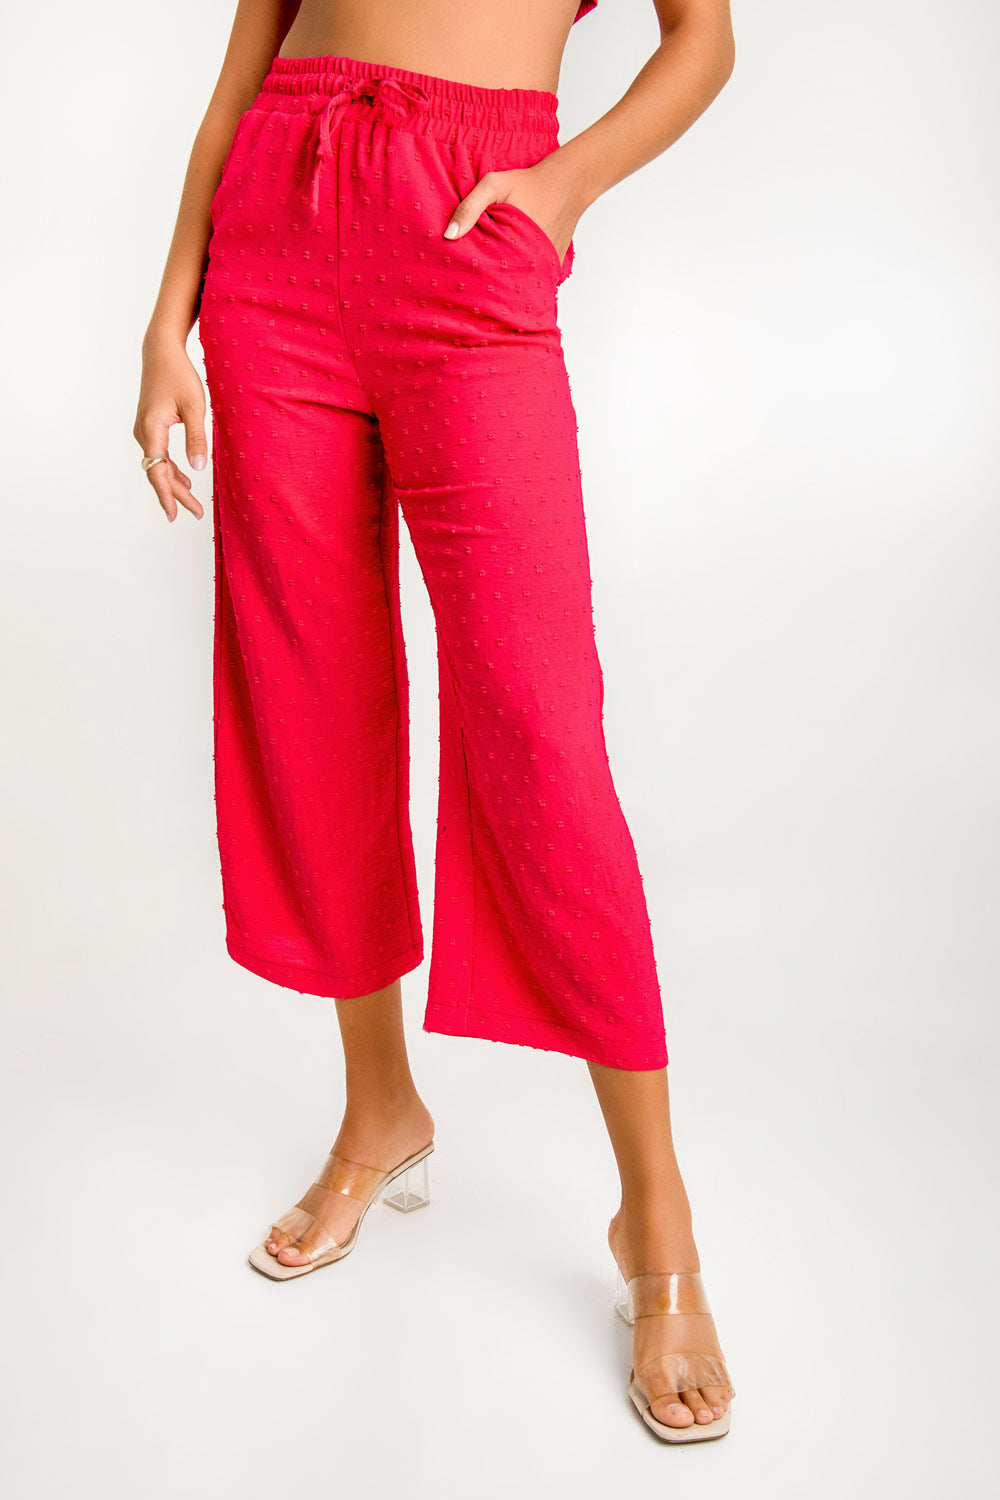 Pantalón de fit recto, bolsillos delanteros, cintura alta con pretina elástica y jareta ajustable. Detalle de polka dot en textura de tejido.